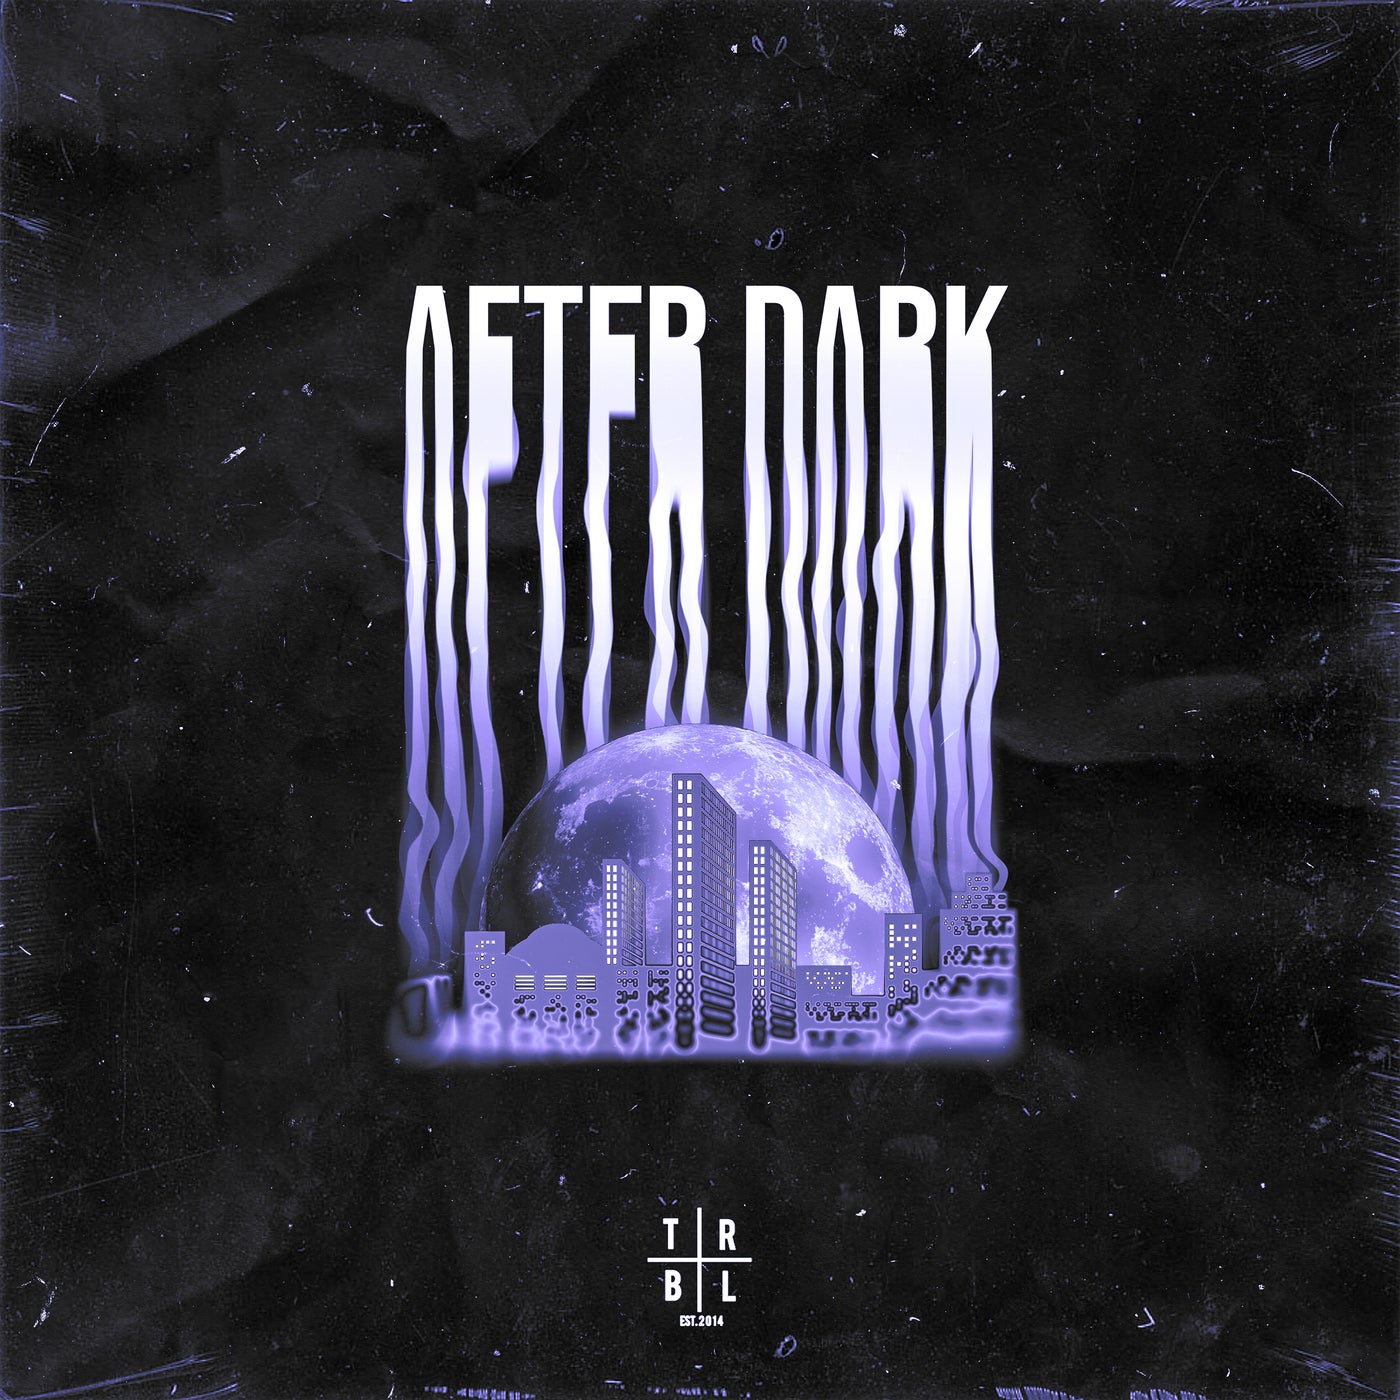 After Dark (Sped Up)